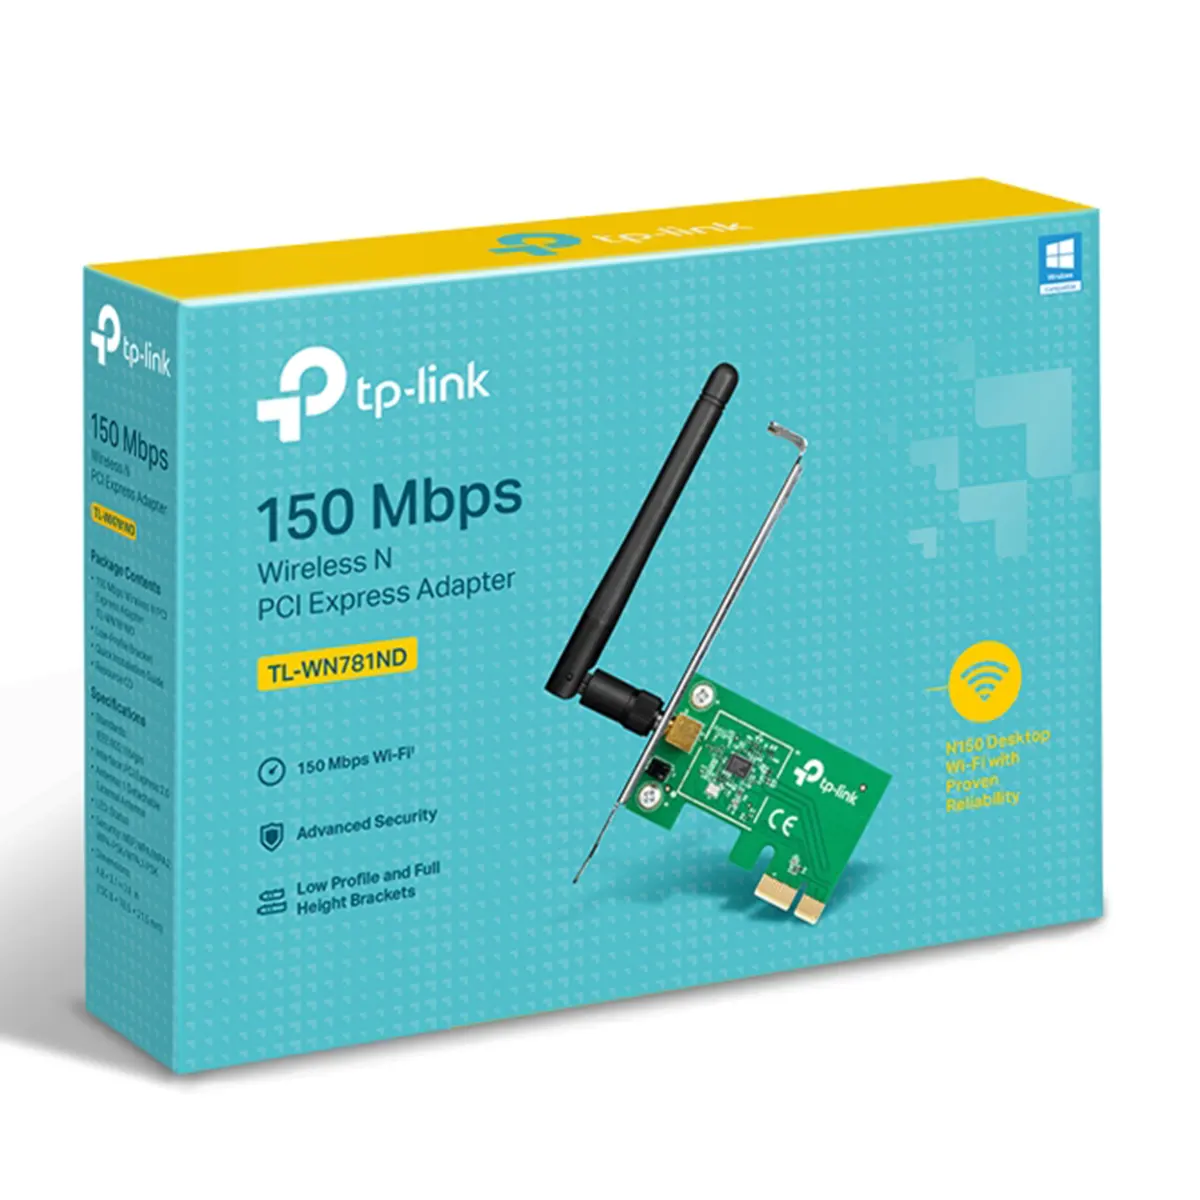 کارت شبکه بی سیم تی پی لینک مدل TP-Link TL-WN781ND 150Mbps Wireless N PCI Express Adapter